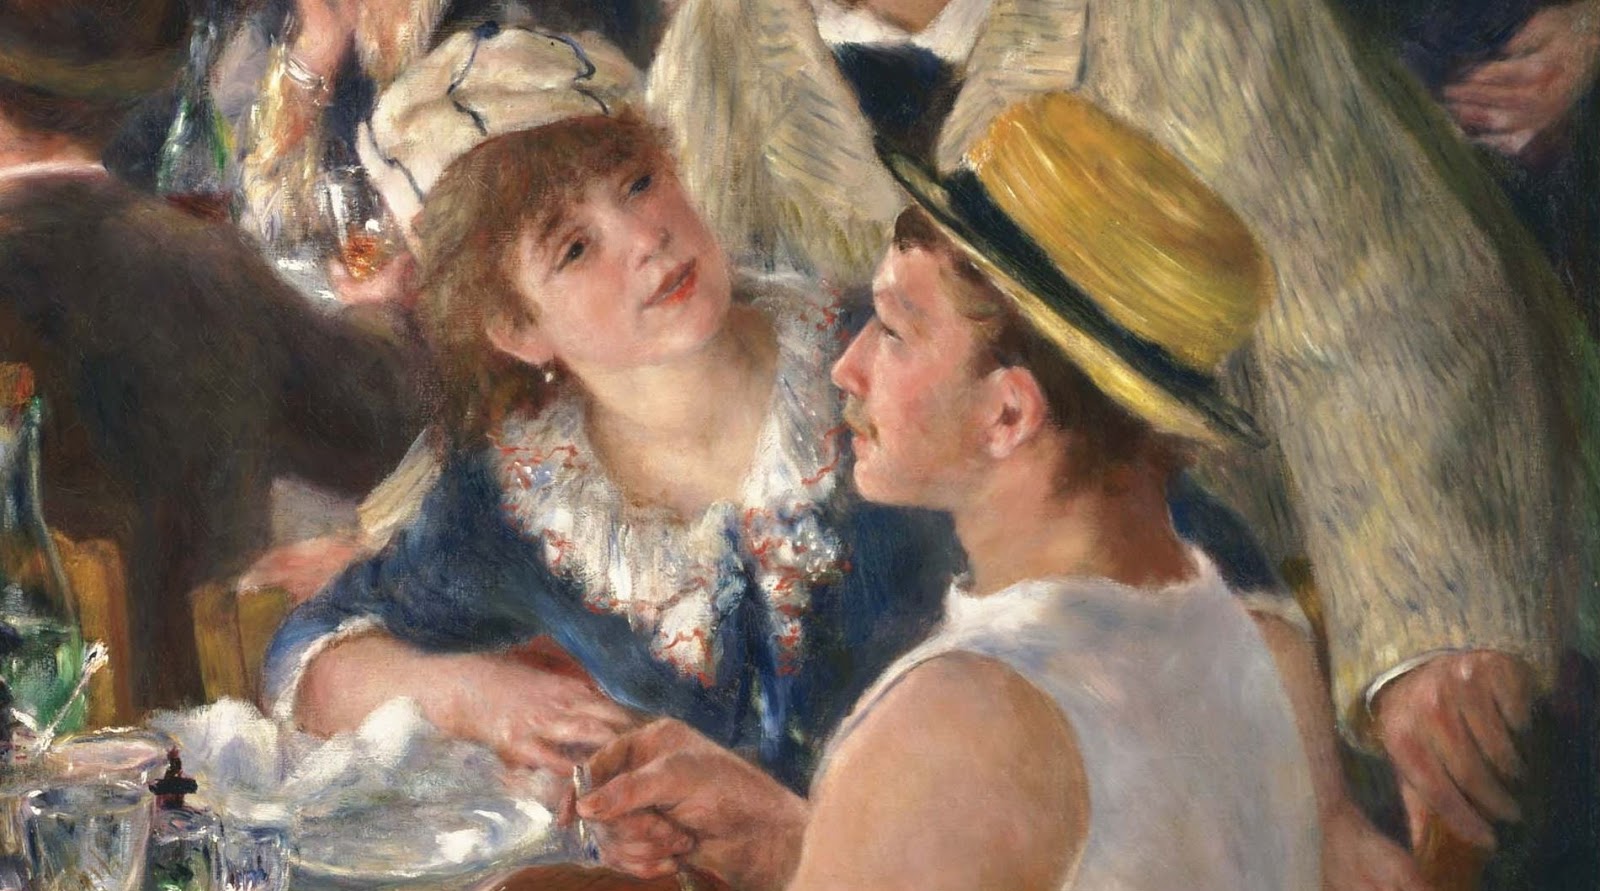 Pierre+Auguste+Renoir-1841-1-19 (581).JPG